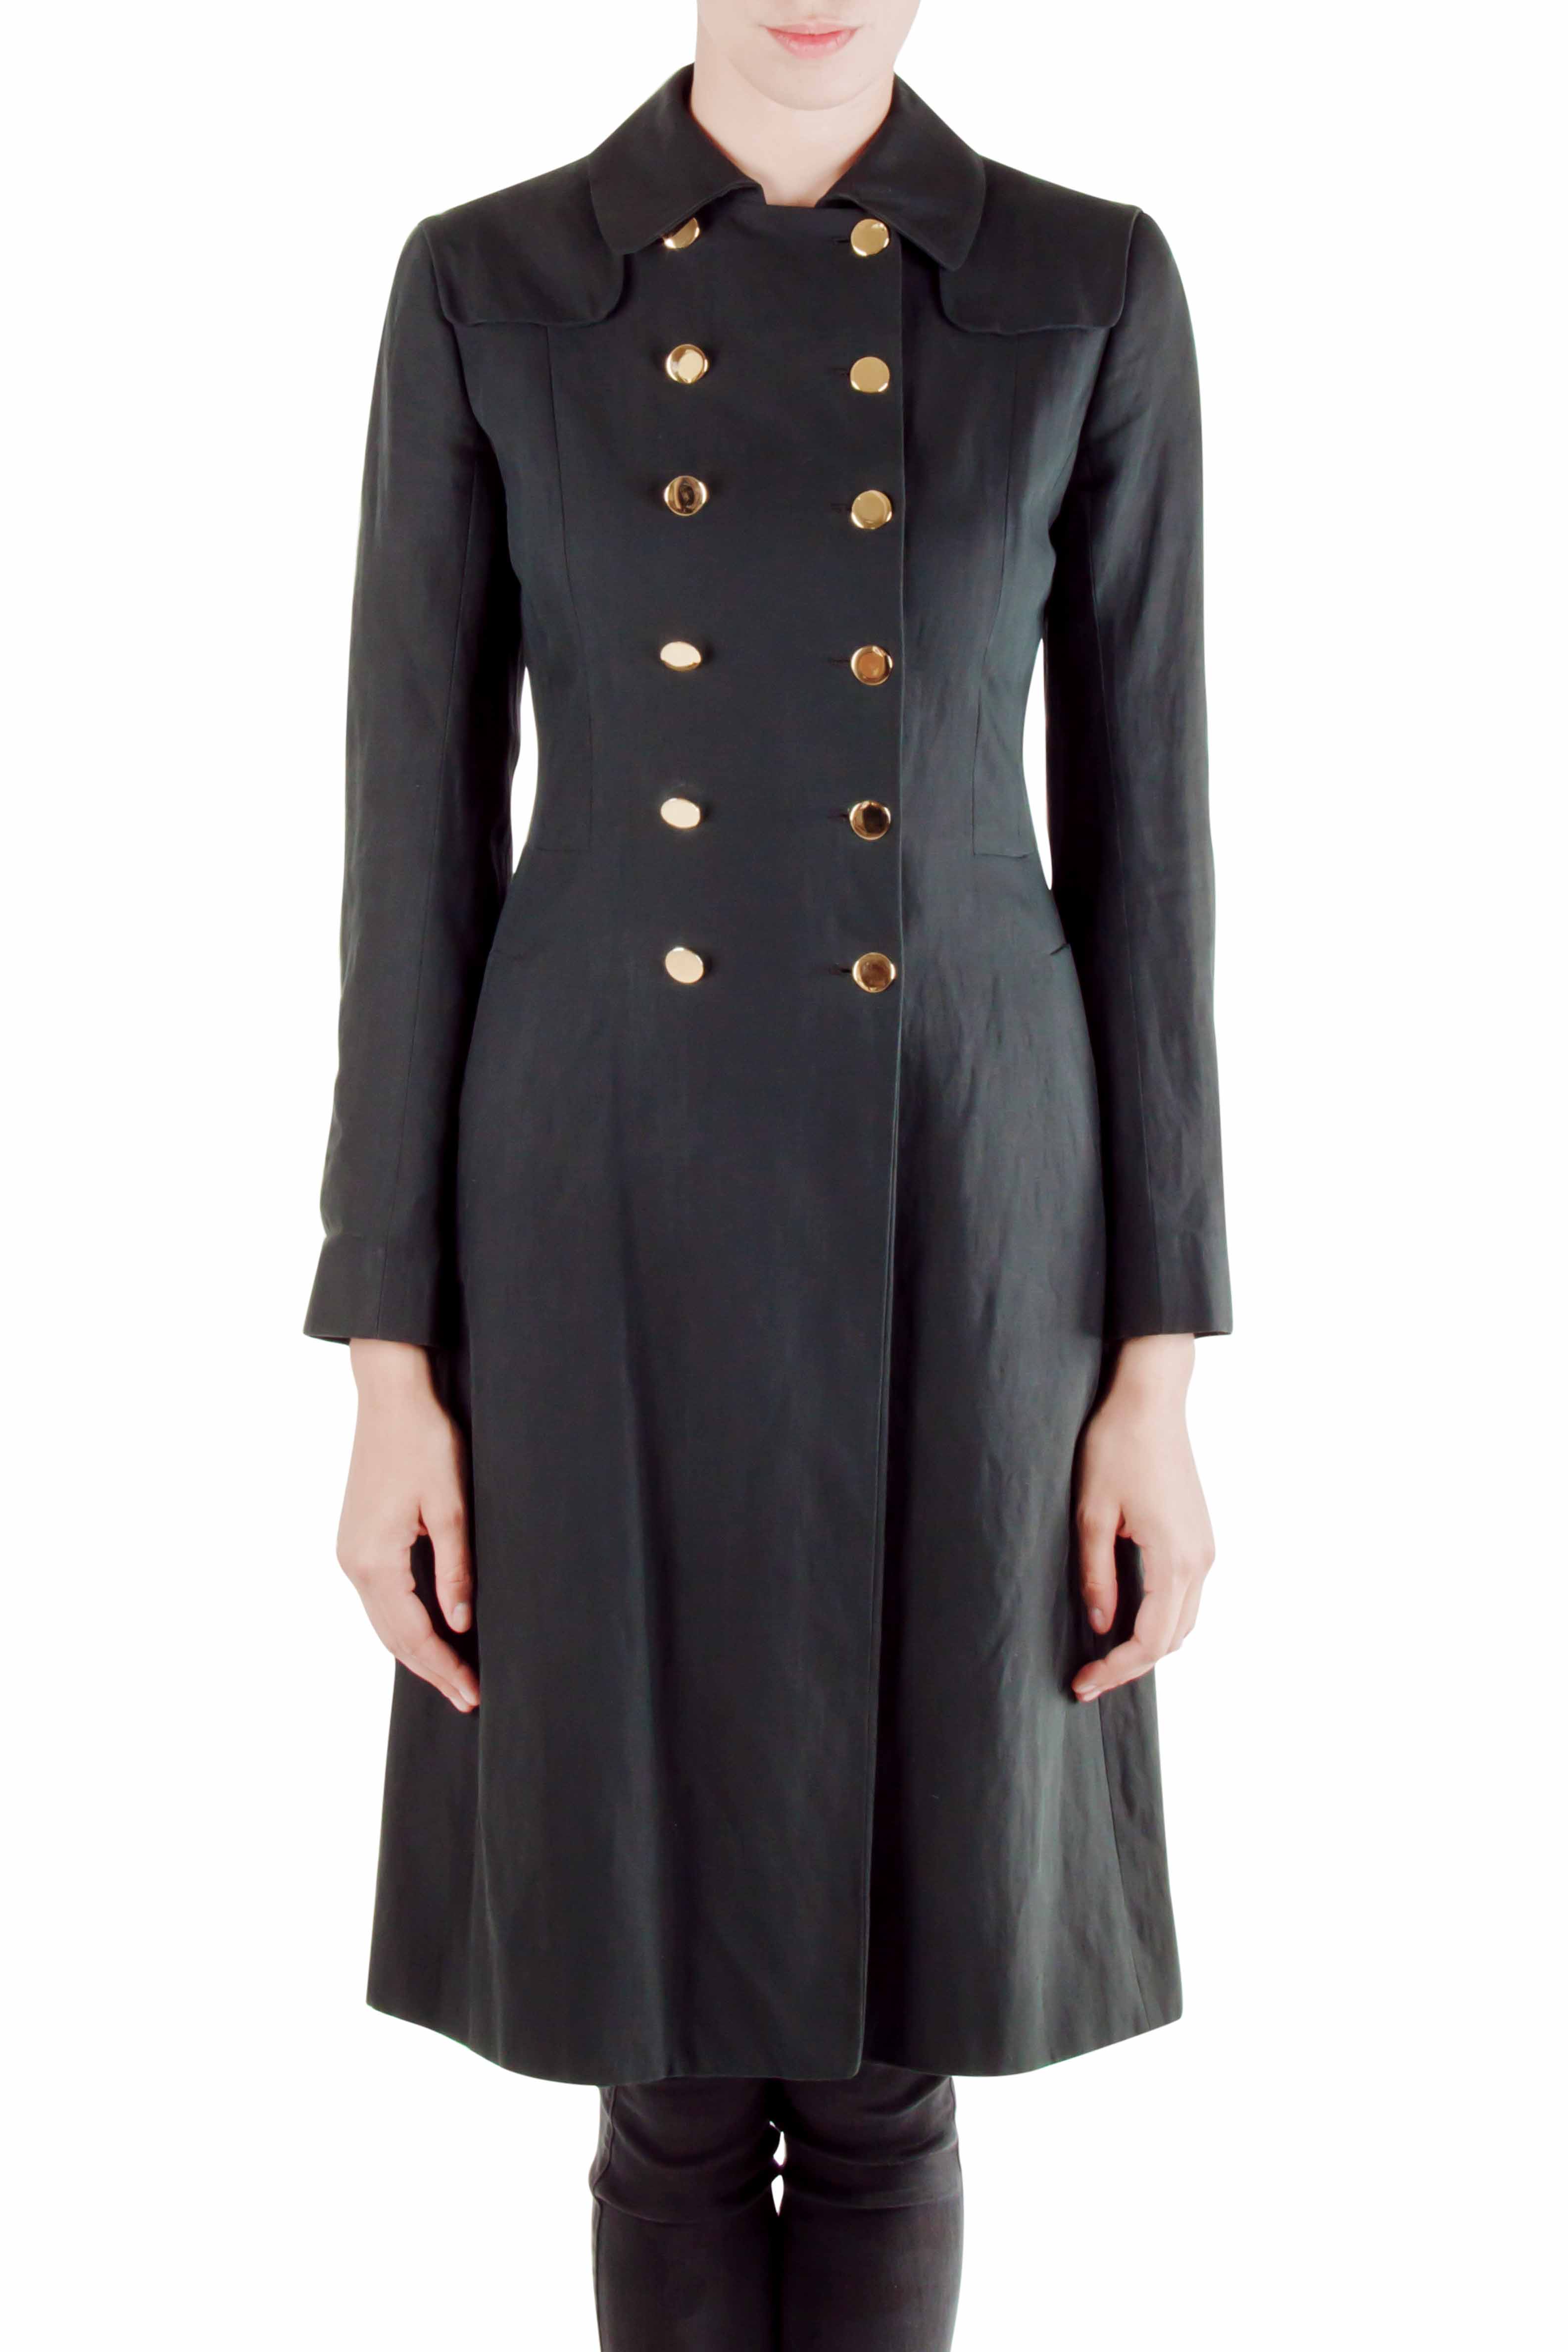 moschino black coat